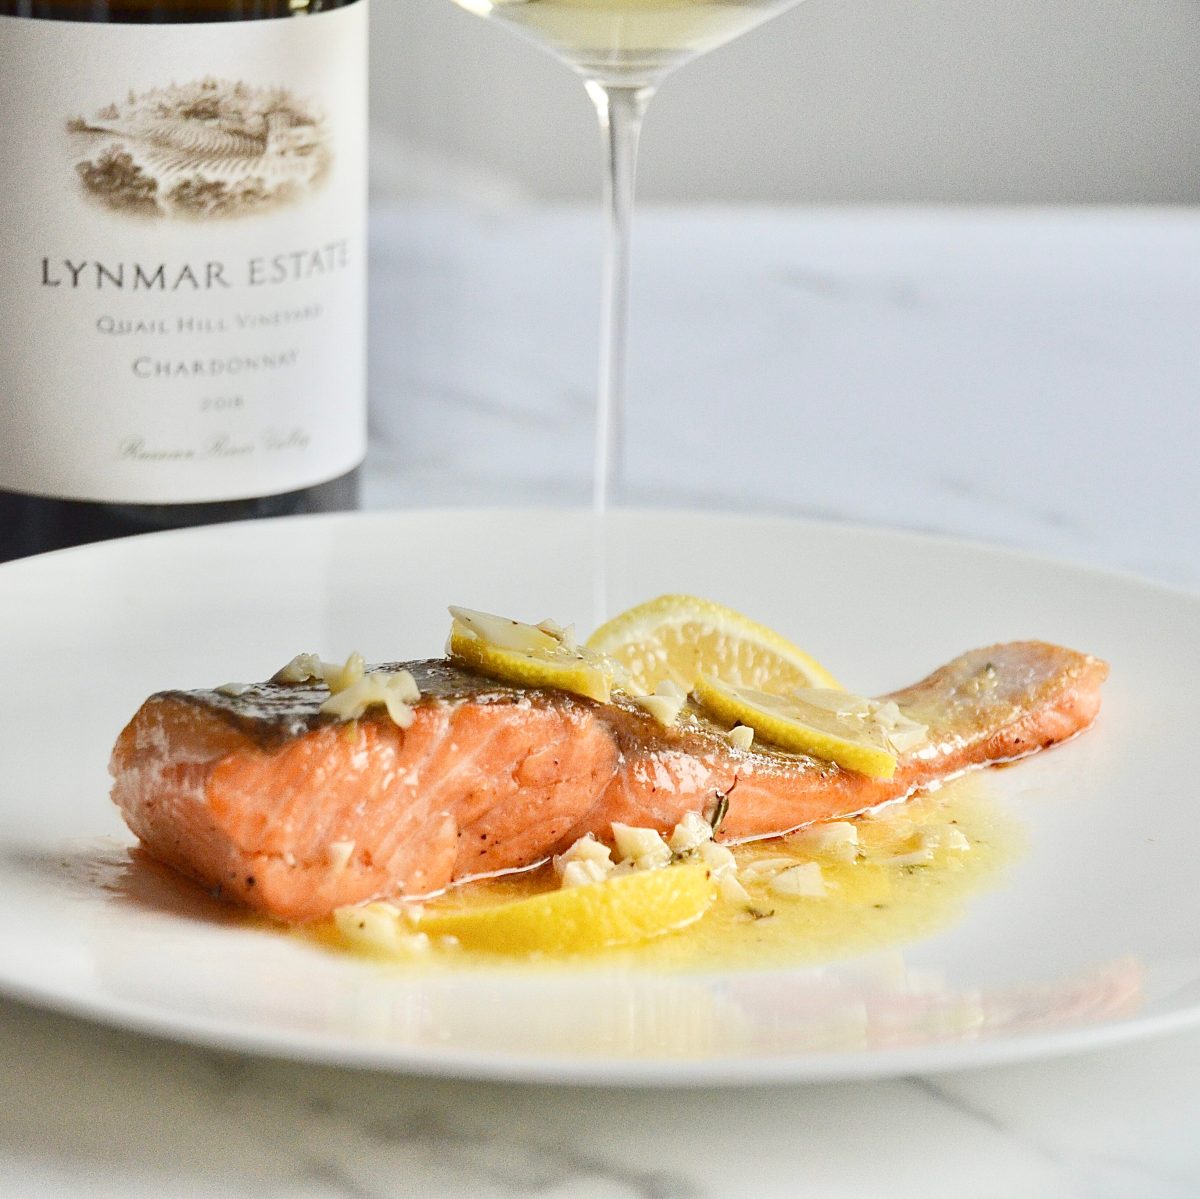 salmon and wine pairing